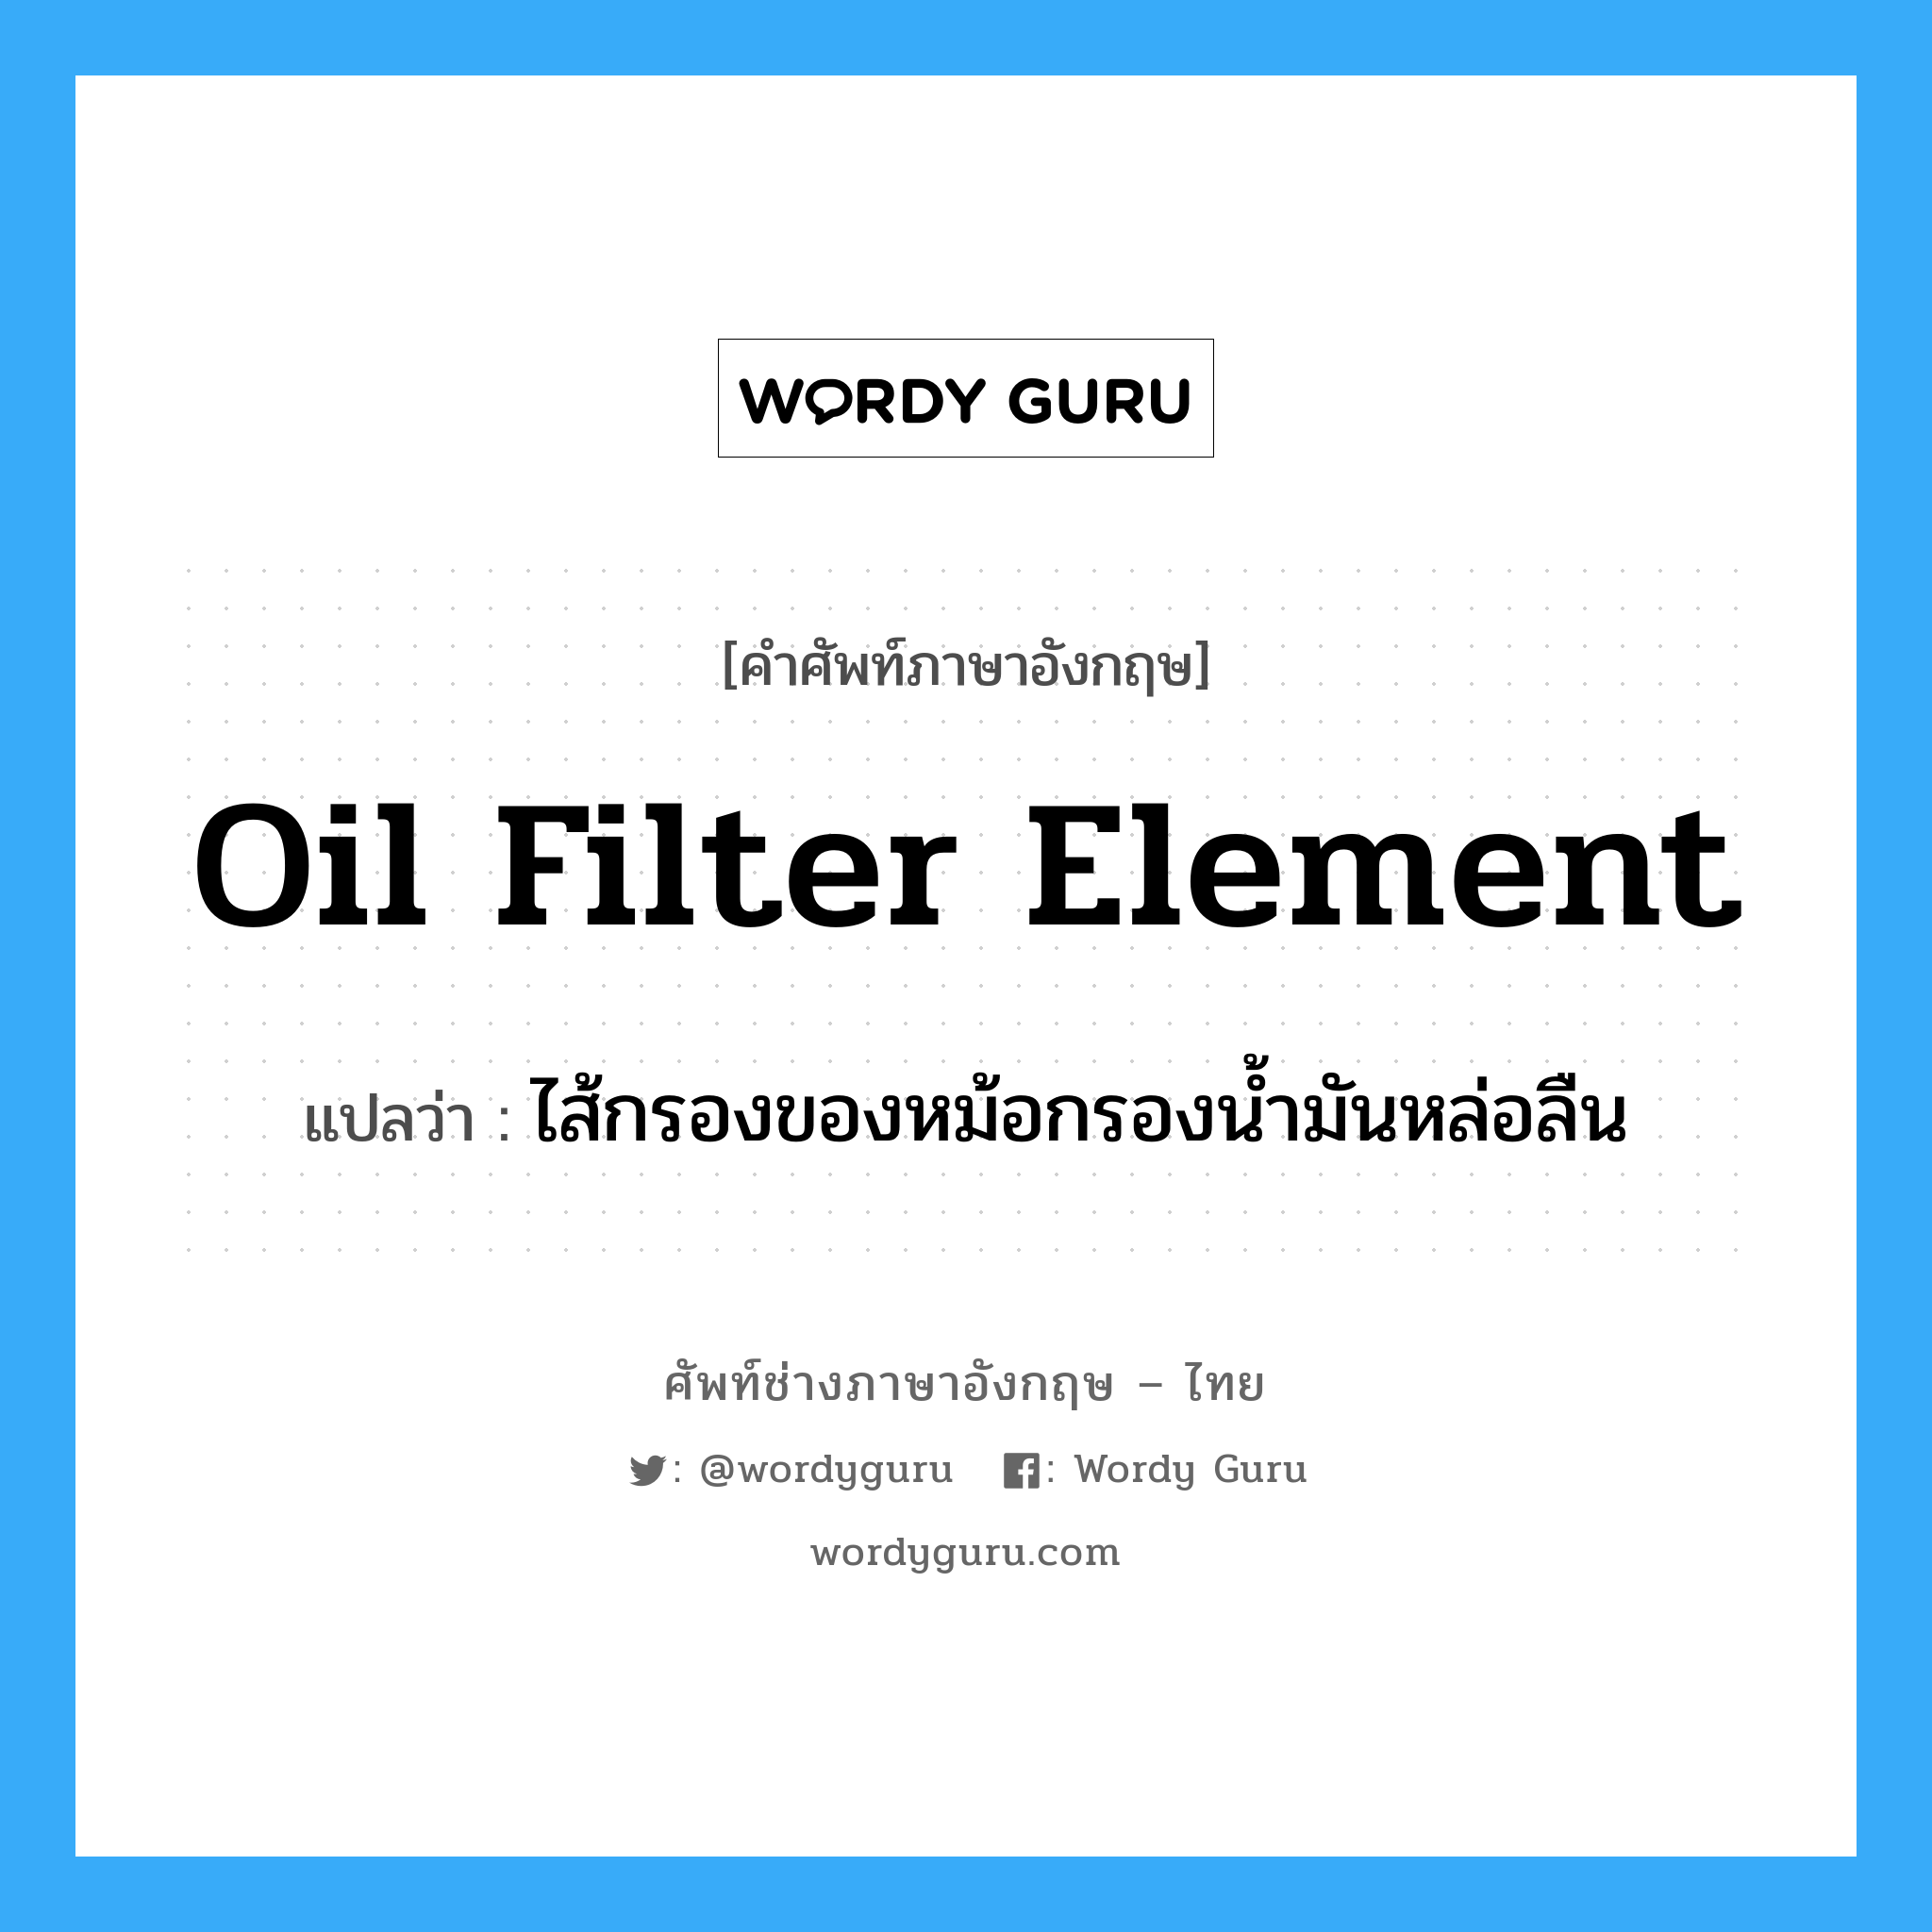 oil filter element แปลว่า?, คำศัพท์ช่างภาษาอังกฤษ - ไทย oil filter element คำศัพท์ภาษาอังกฤษ oil filter element แปลว่า ไส้กรองของหม้อกรองน้ำมันหล่อลืน